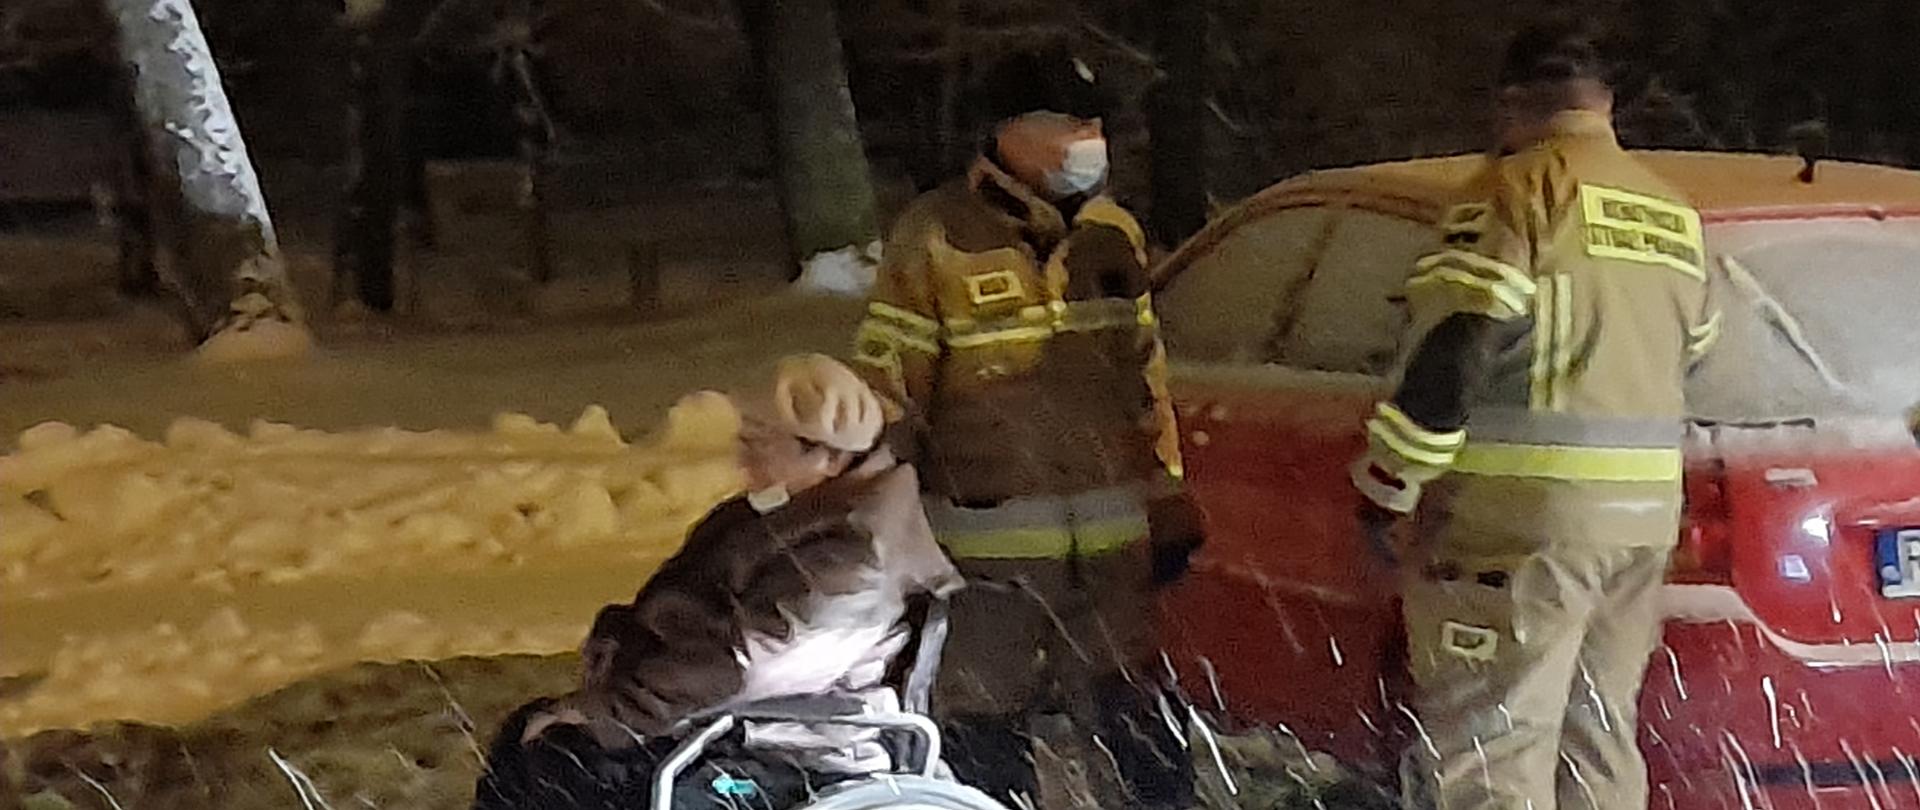 Zdjęcie przedstawia osobę na wózku inwalidzkim oraz 2 strażaków. Zdjęcie wykonane w porze nocnej przy opadach śniegu.